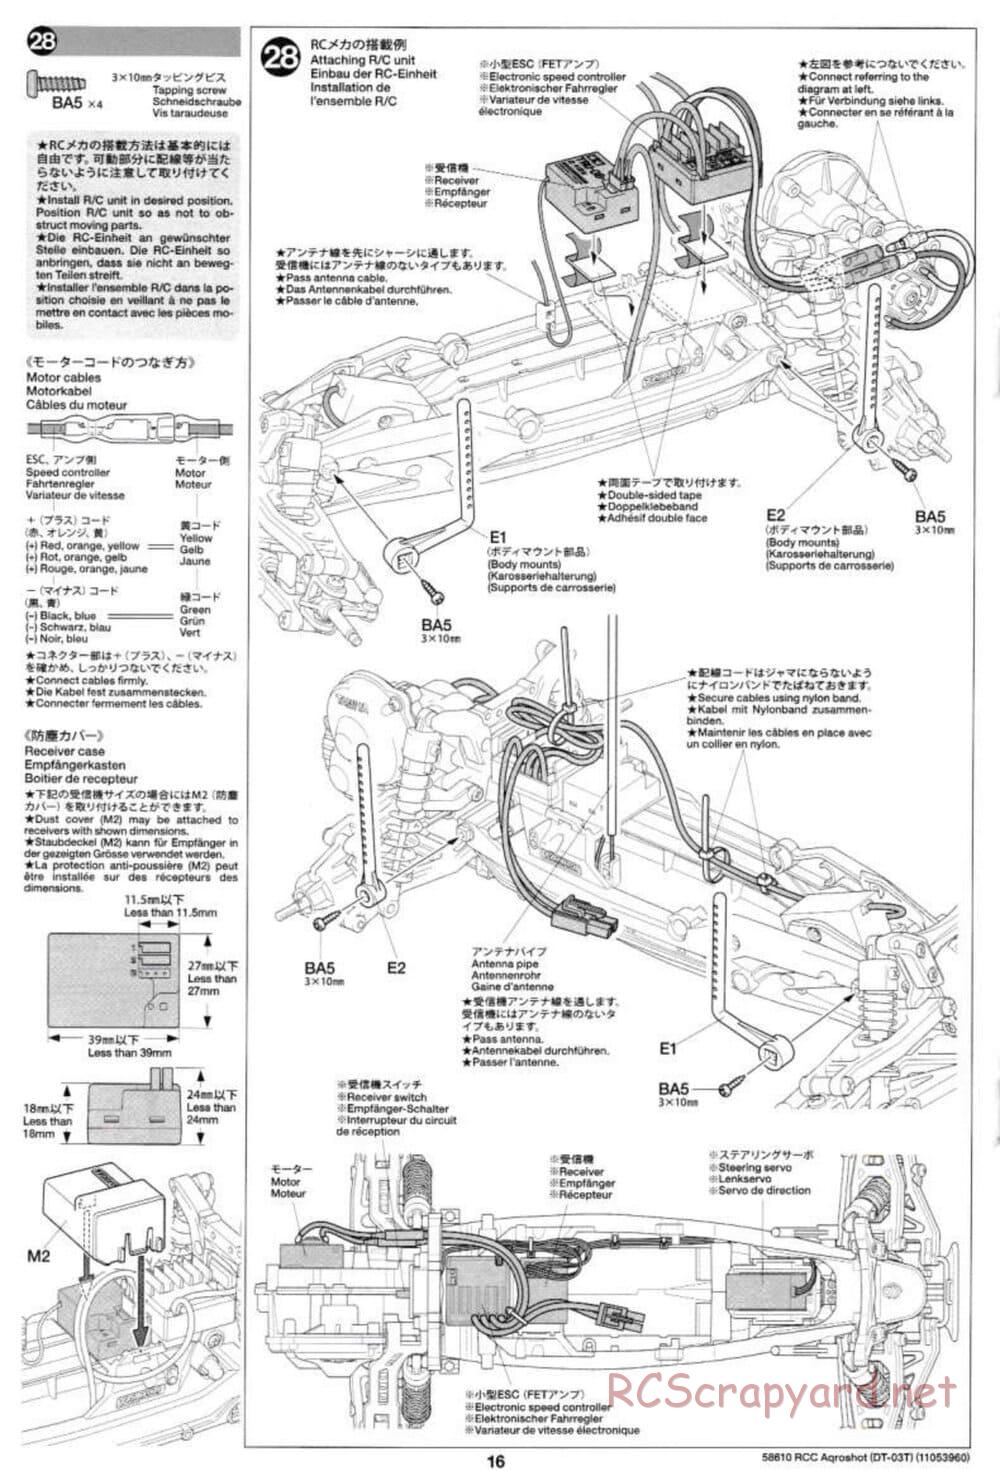 Tamiya - Aqroshot Chassis - Manual - Page 16